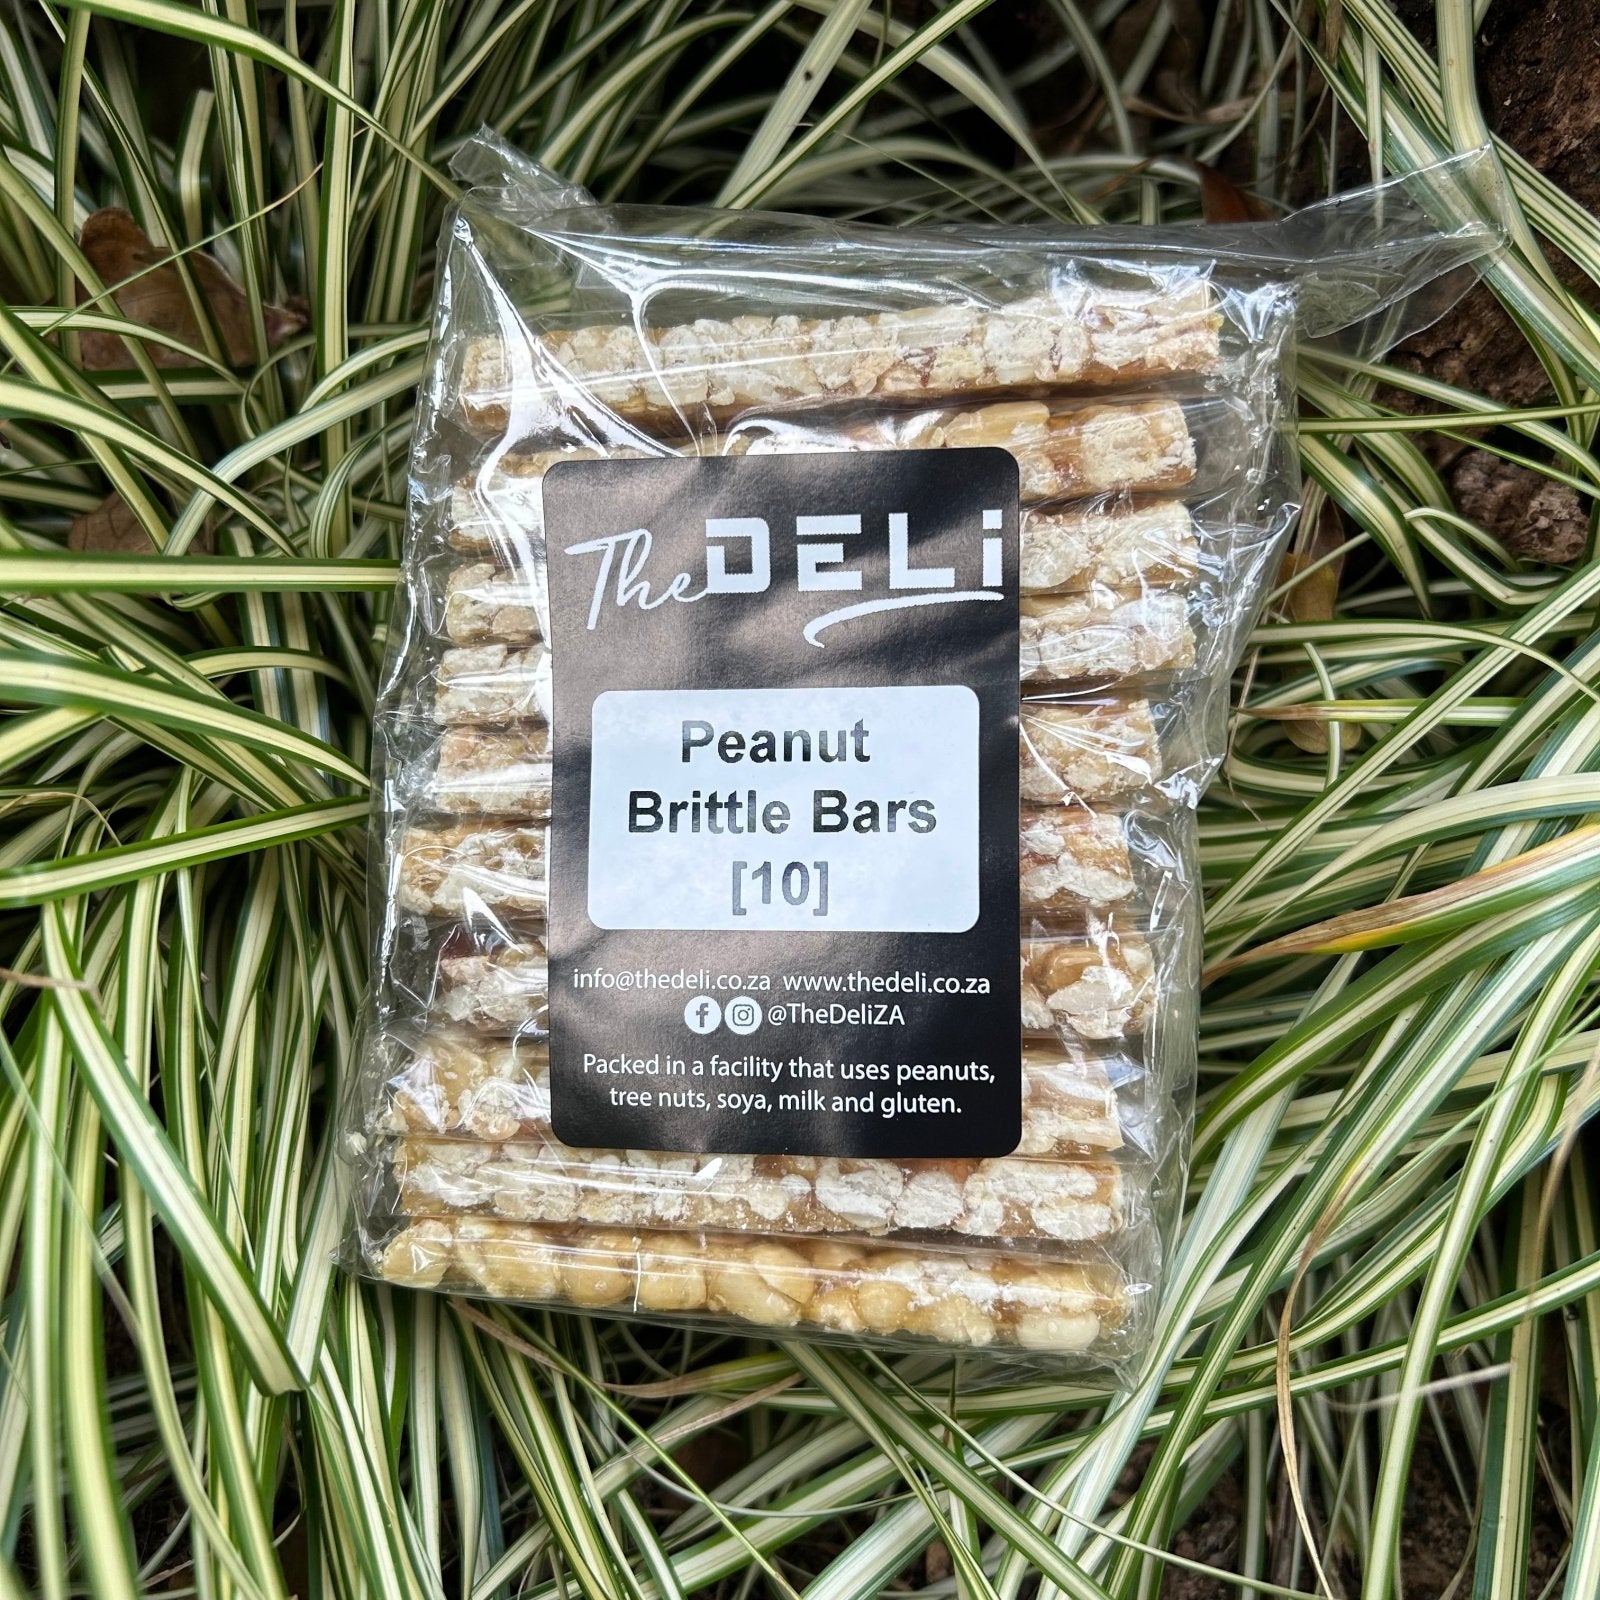 Peanut Brittle Bars (10-pack) - The Deli